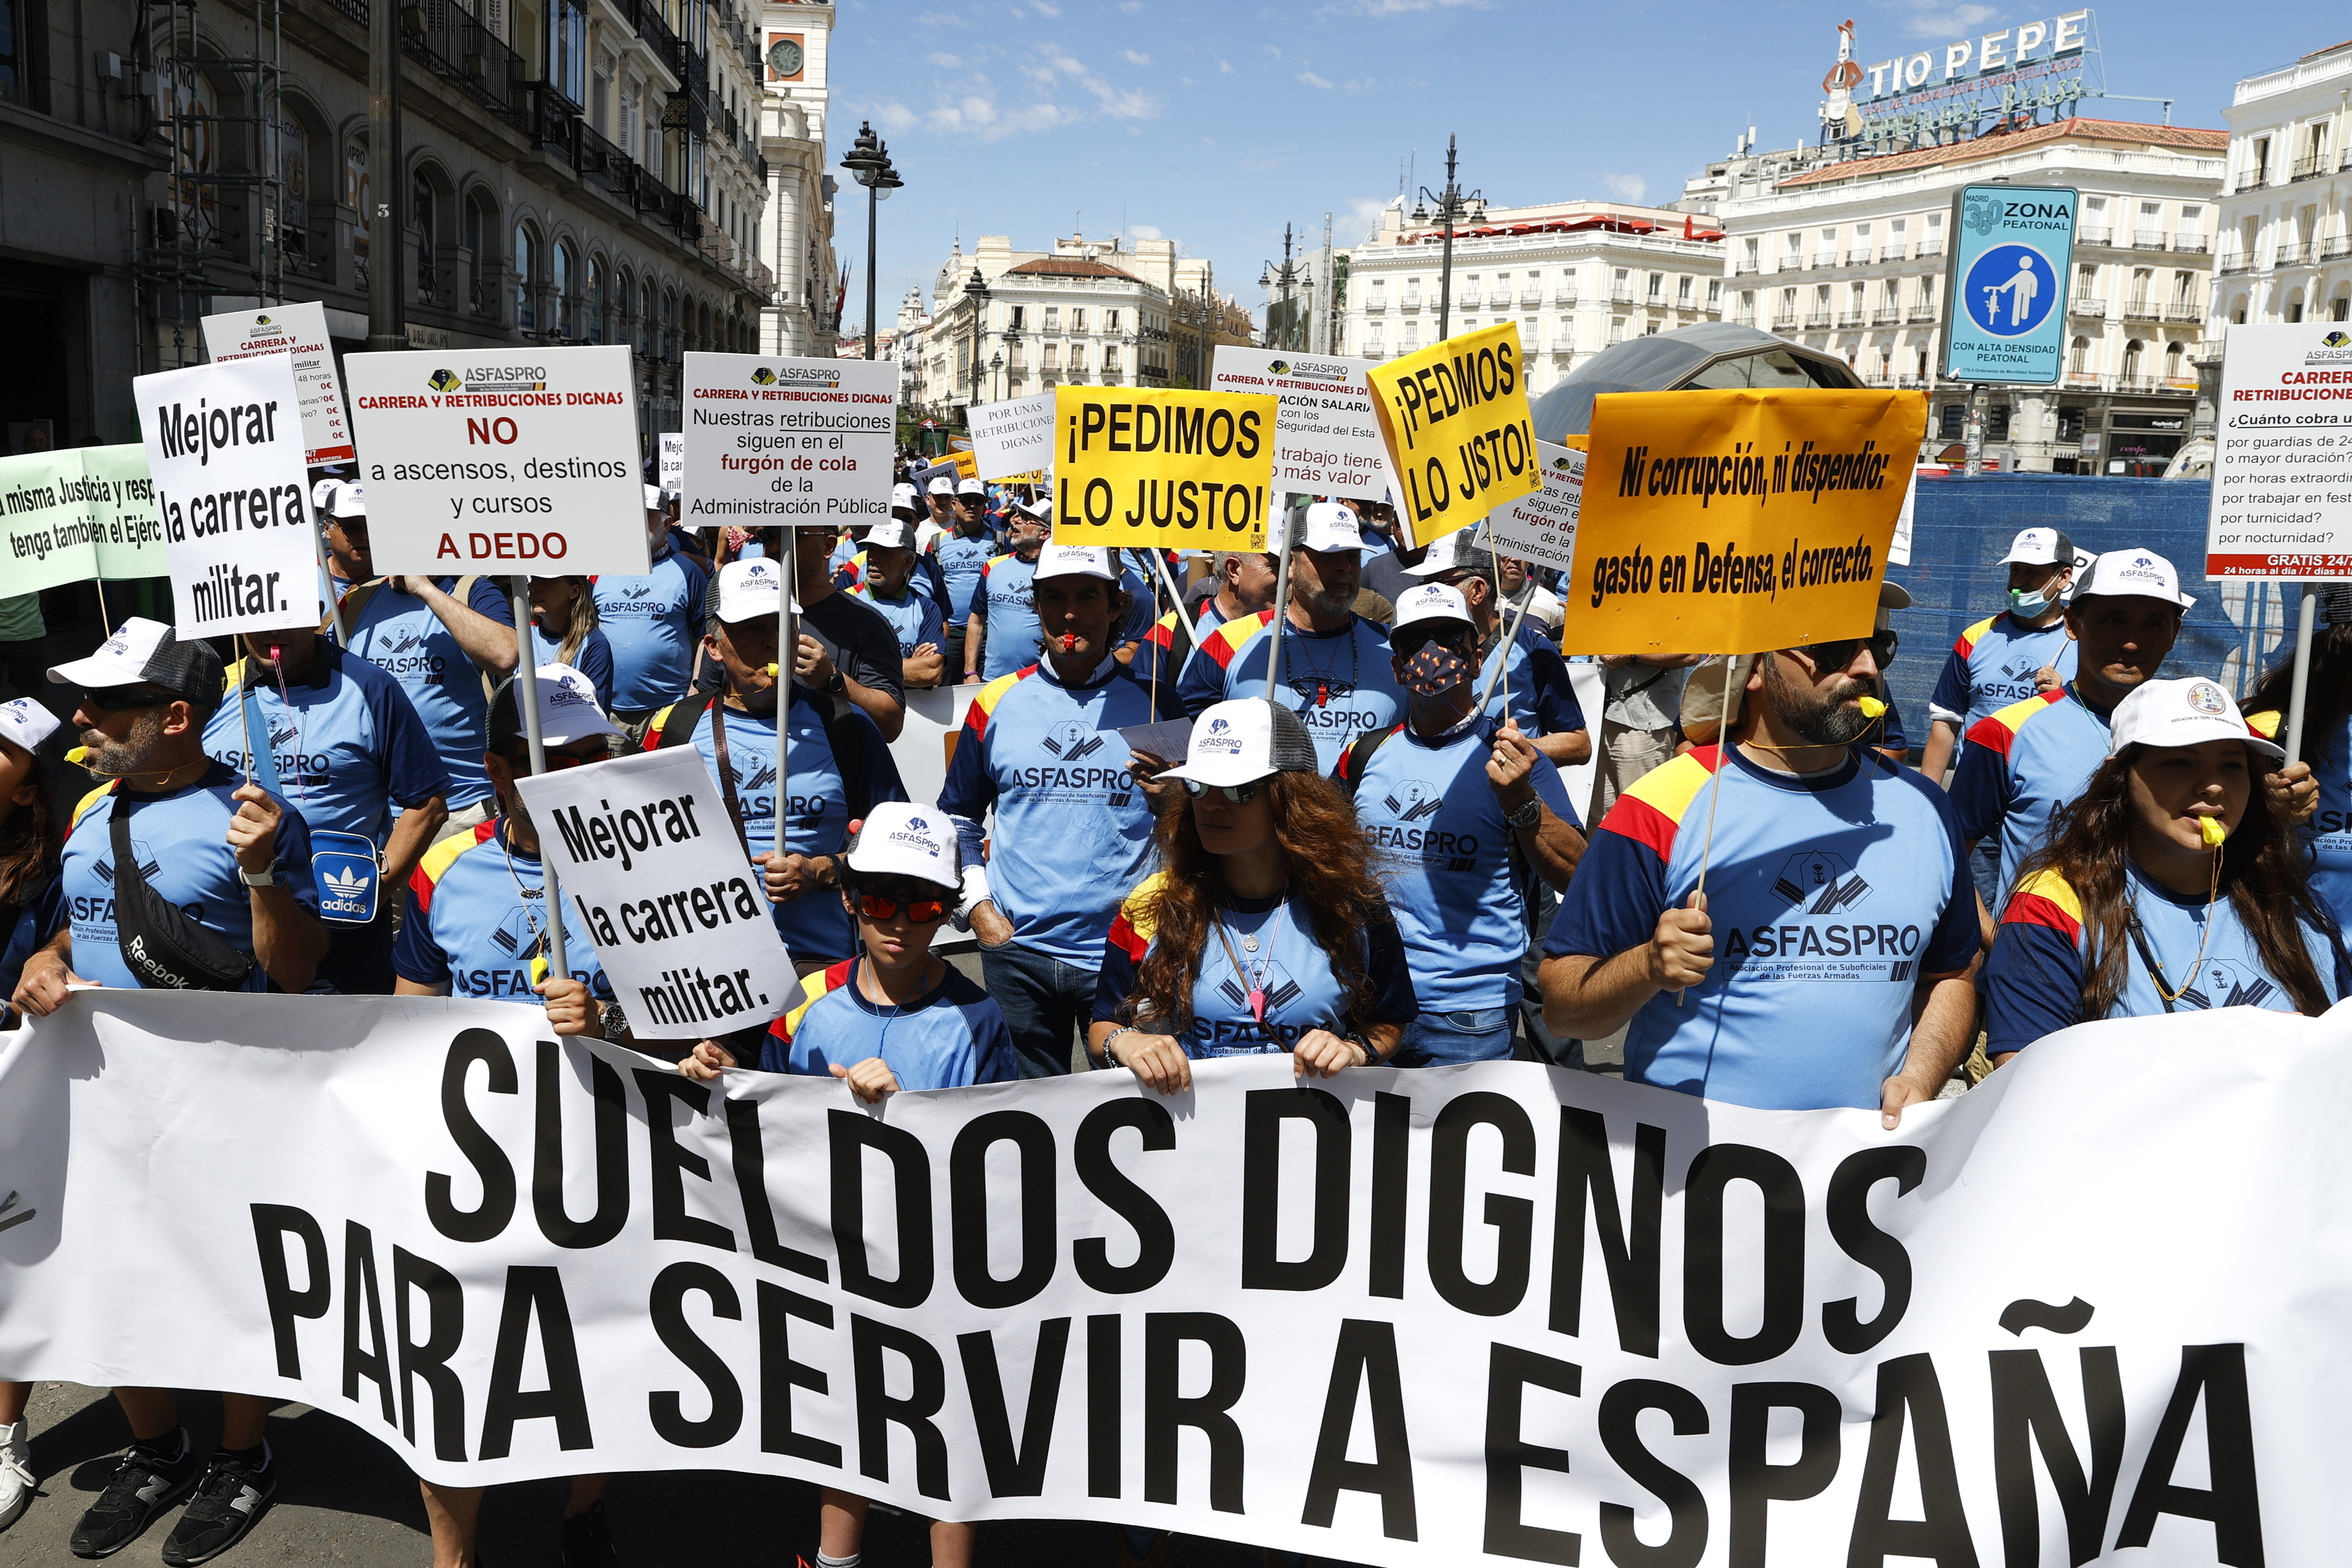 Manifestación convocada por las asociaciones de militares ASFASPRO, ATME y UMT para reivindicar una carrera y unas retribuciones "dignas", este sábado en Madrid.